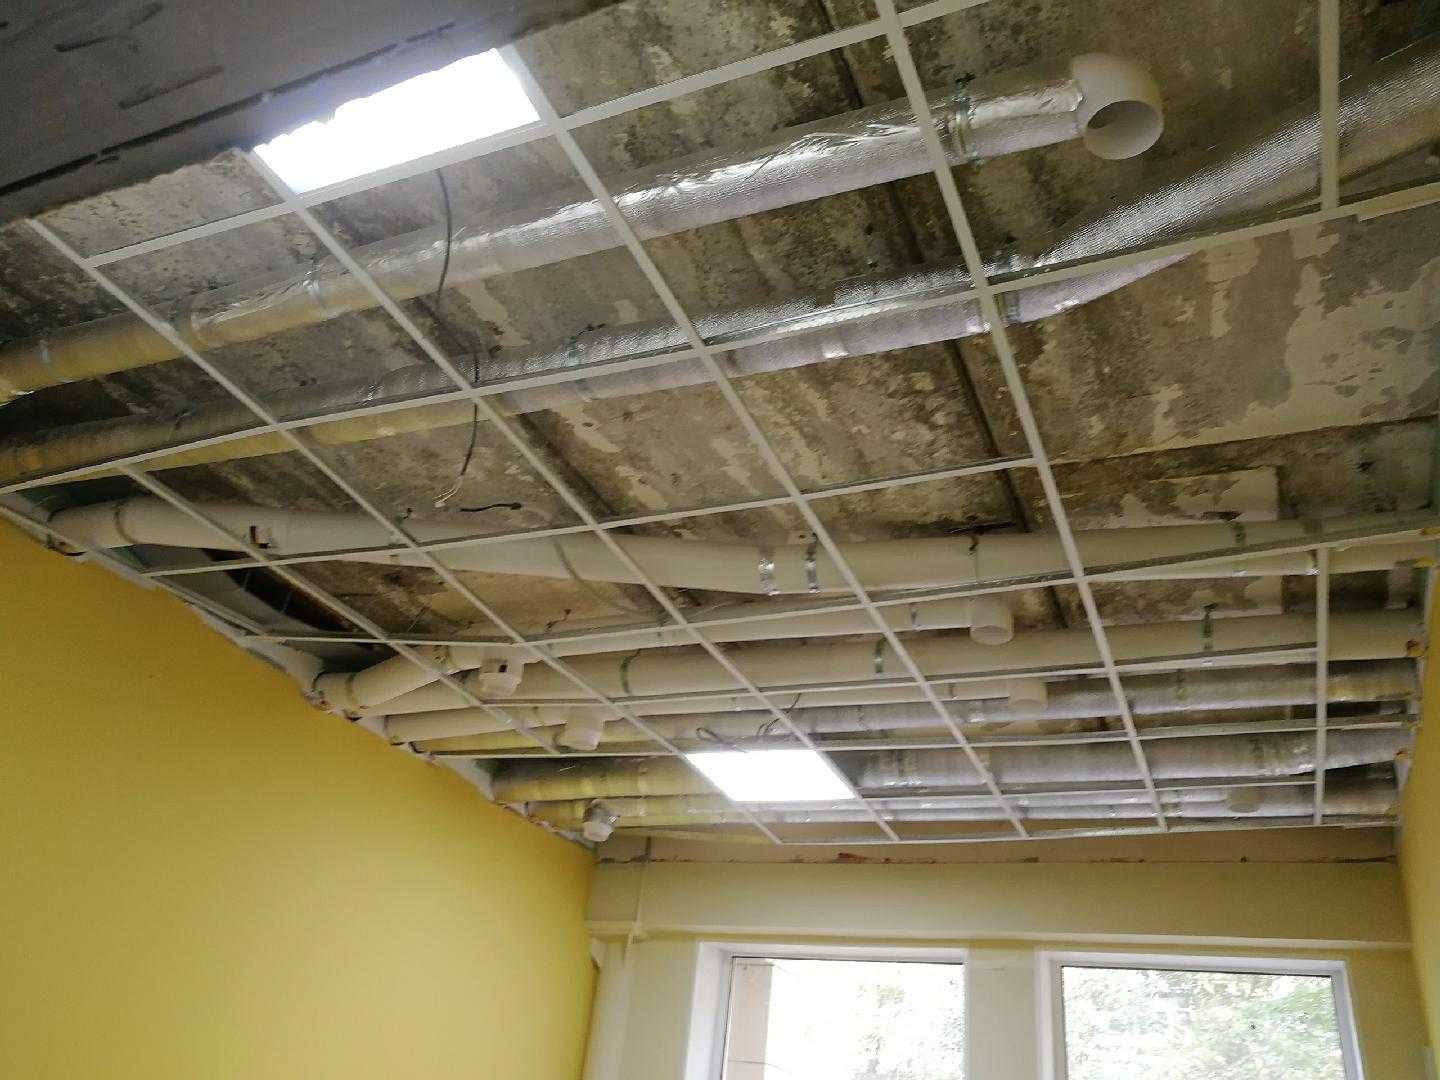 Демонтаж подвесного потолка: как разобрать реечный потолок, как снять конструкцию из пластиковых панелей своими руками